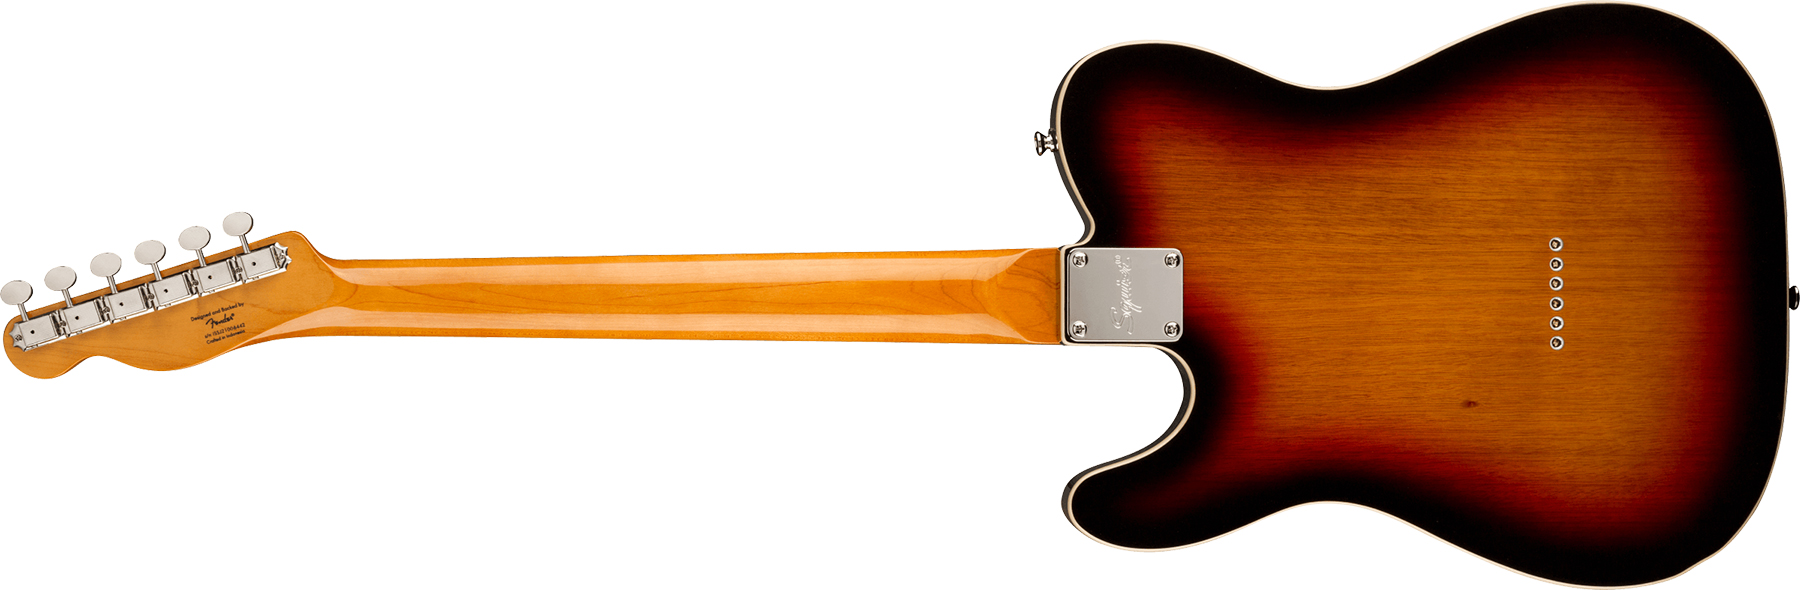 Squier Esquire Tele '60s Custom Classic Vibe Fsr Ltd Lau - 3 Color Sunburst - E-Gitarre in Teleform - Variation 1